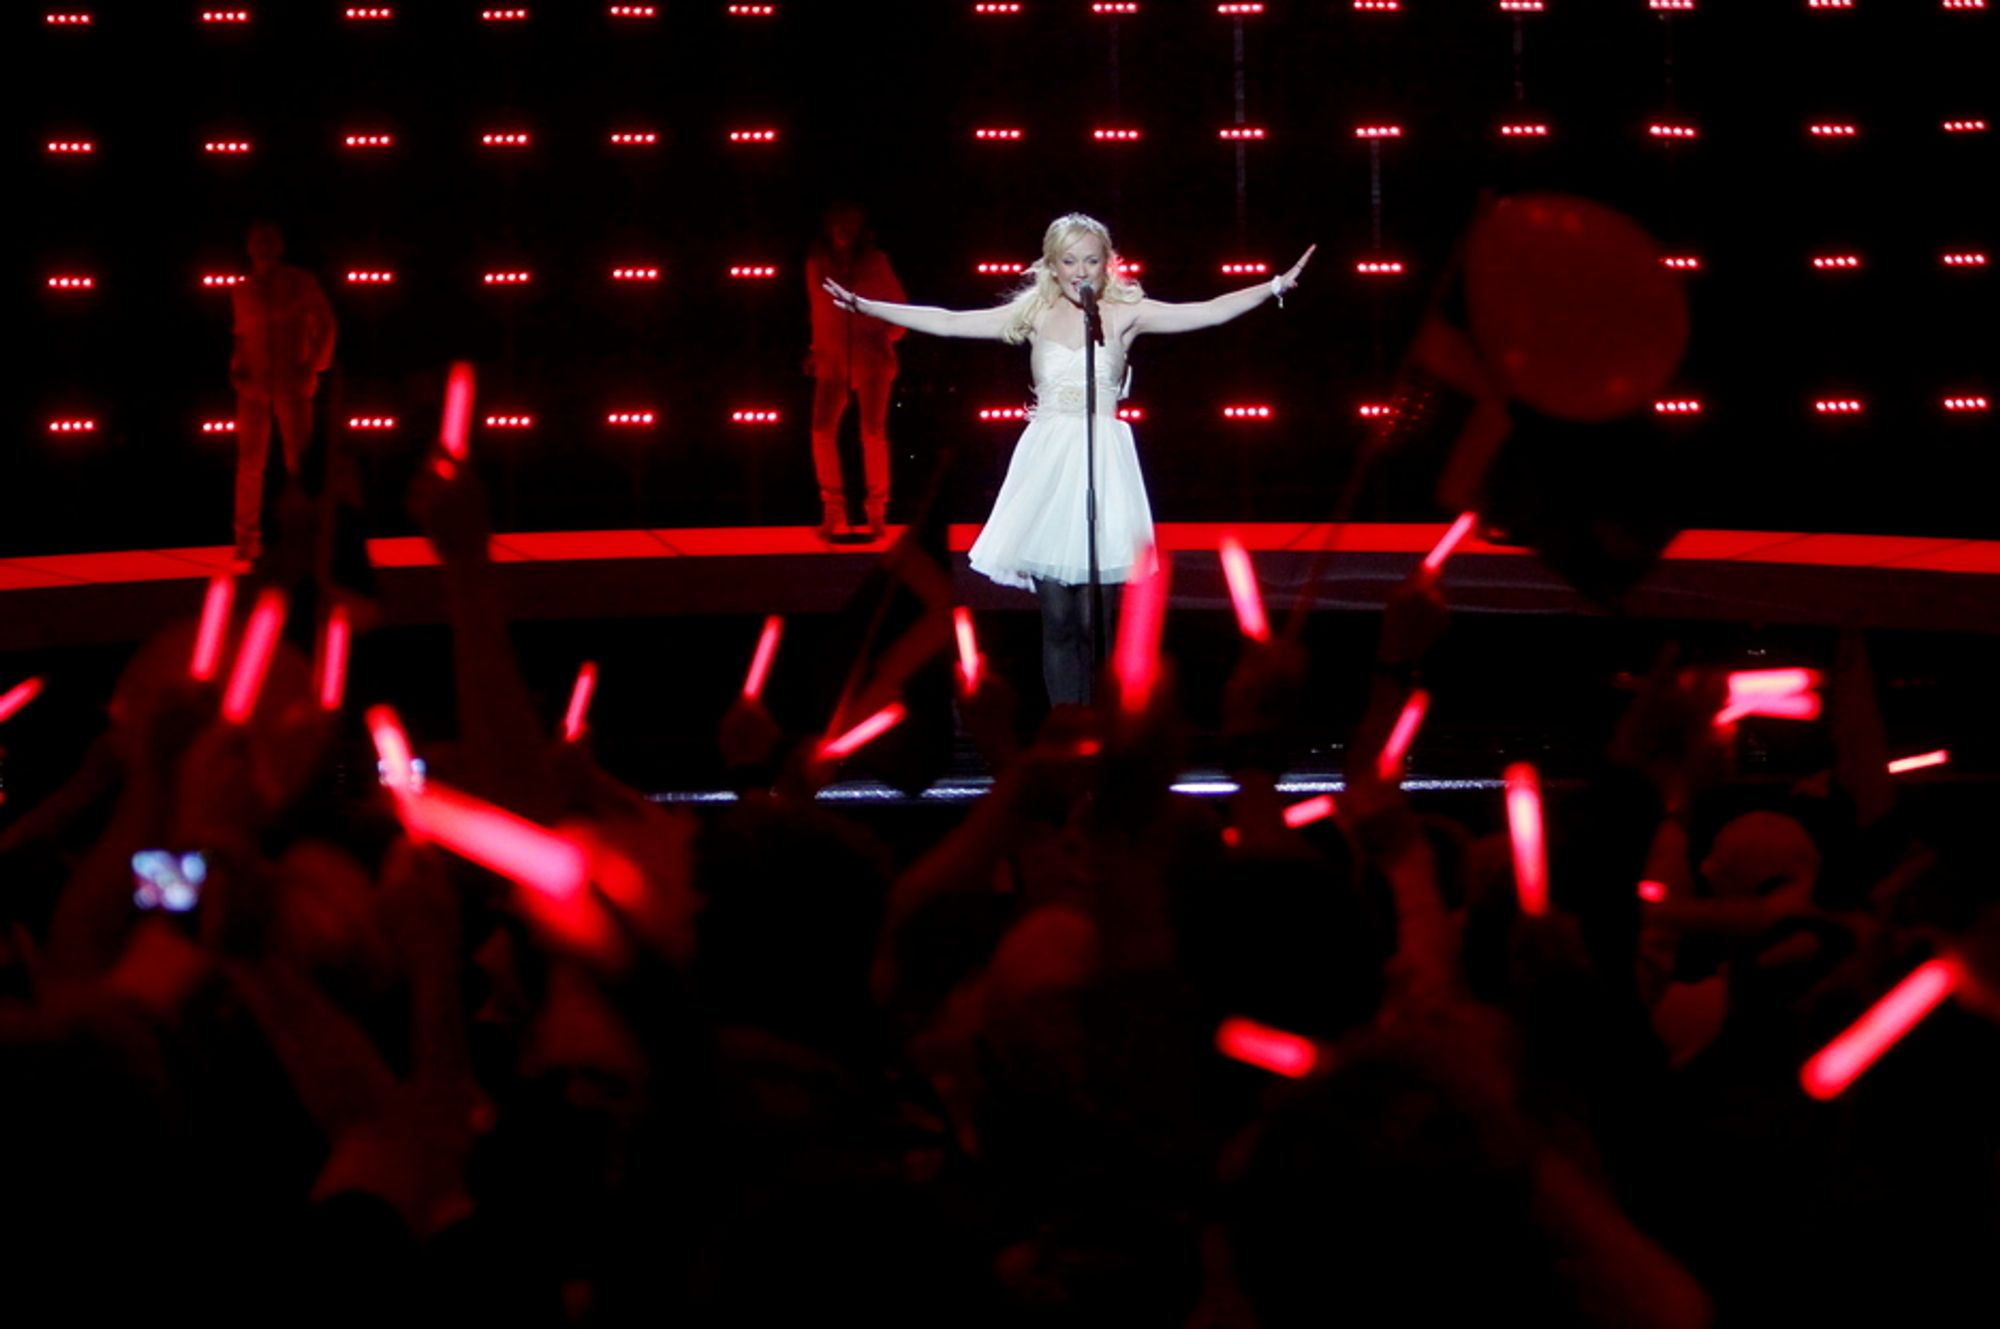 Svenske Anna Bergendahl klarte ikke kvalifisere seg til finalen i Eurovision Song Contest. Men svenskene kunne i alle fall nyte sendingen både i HD og surround.